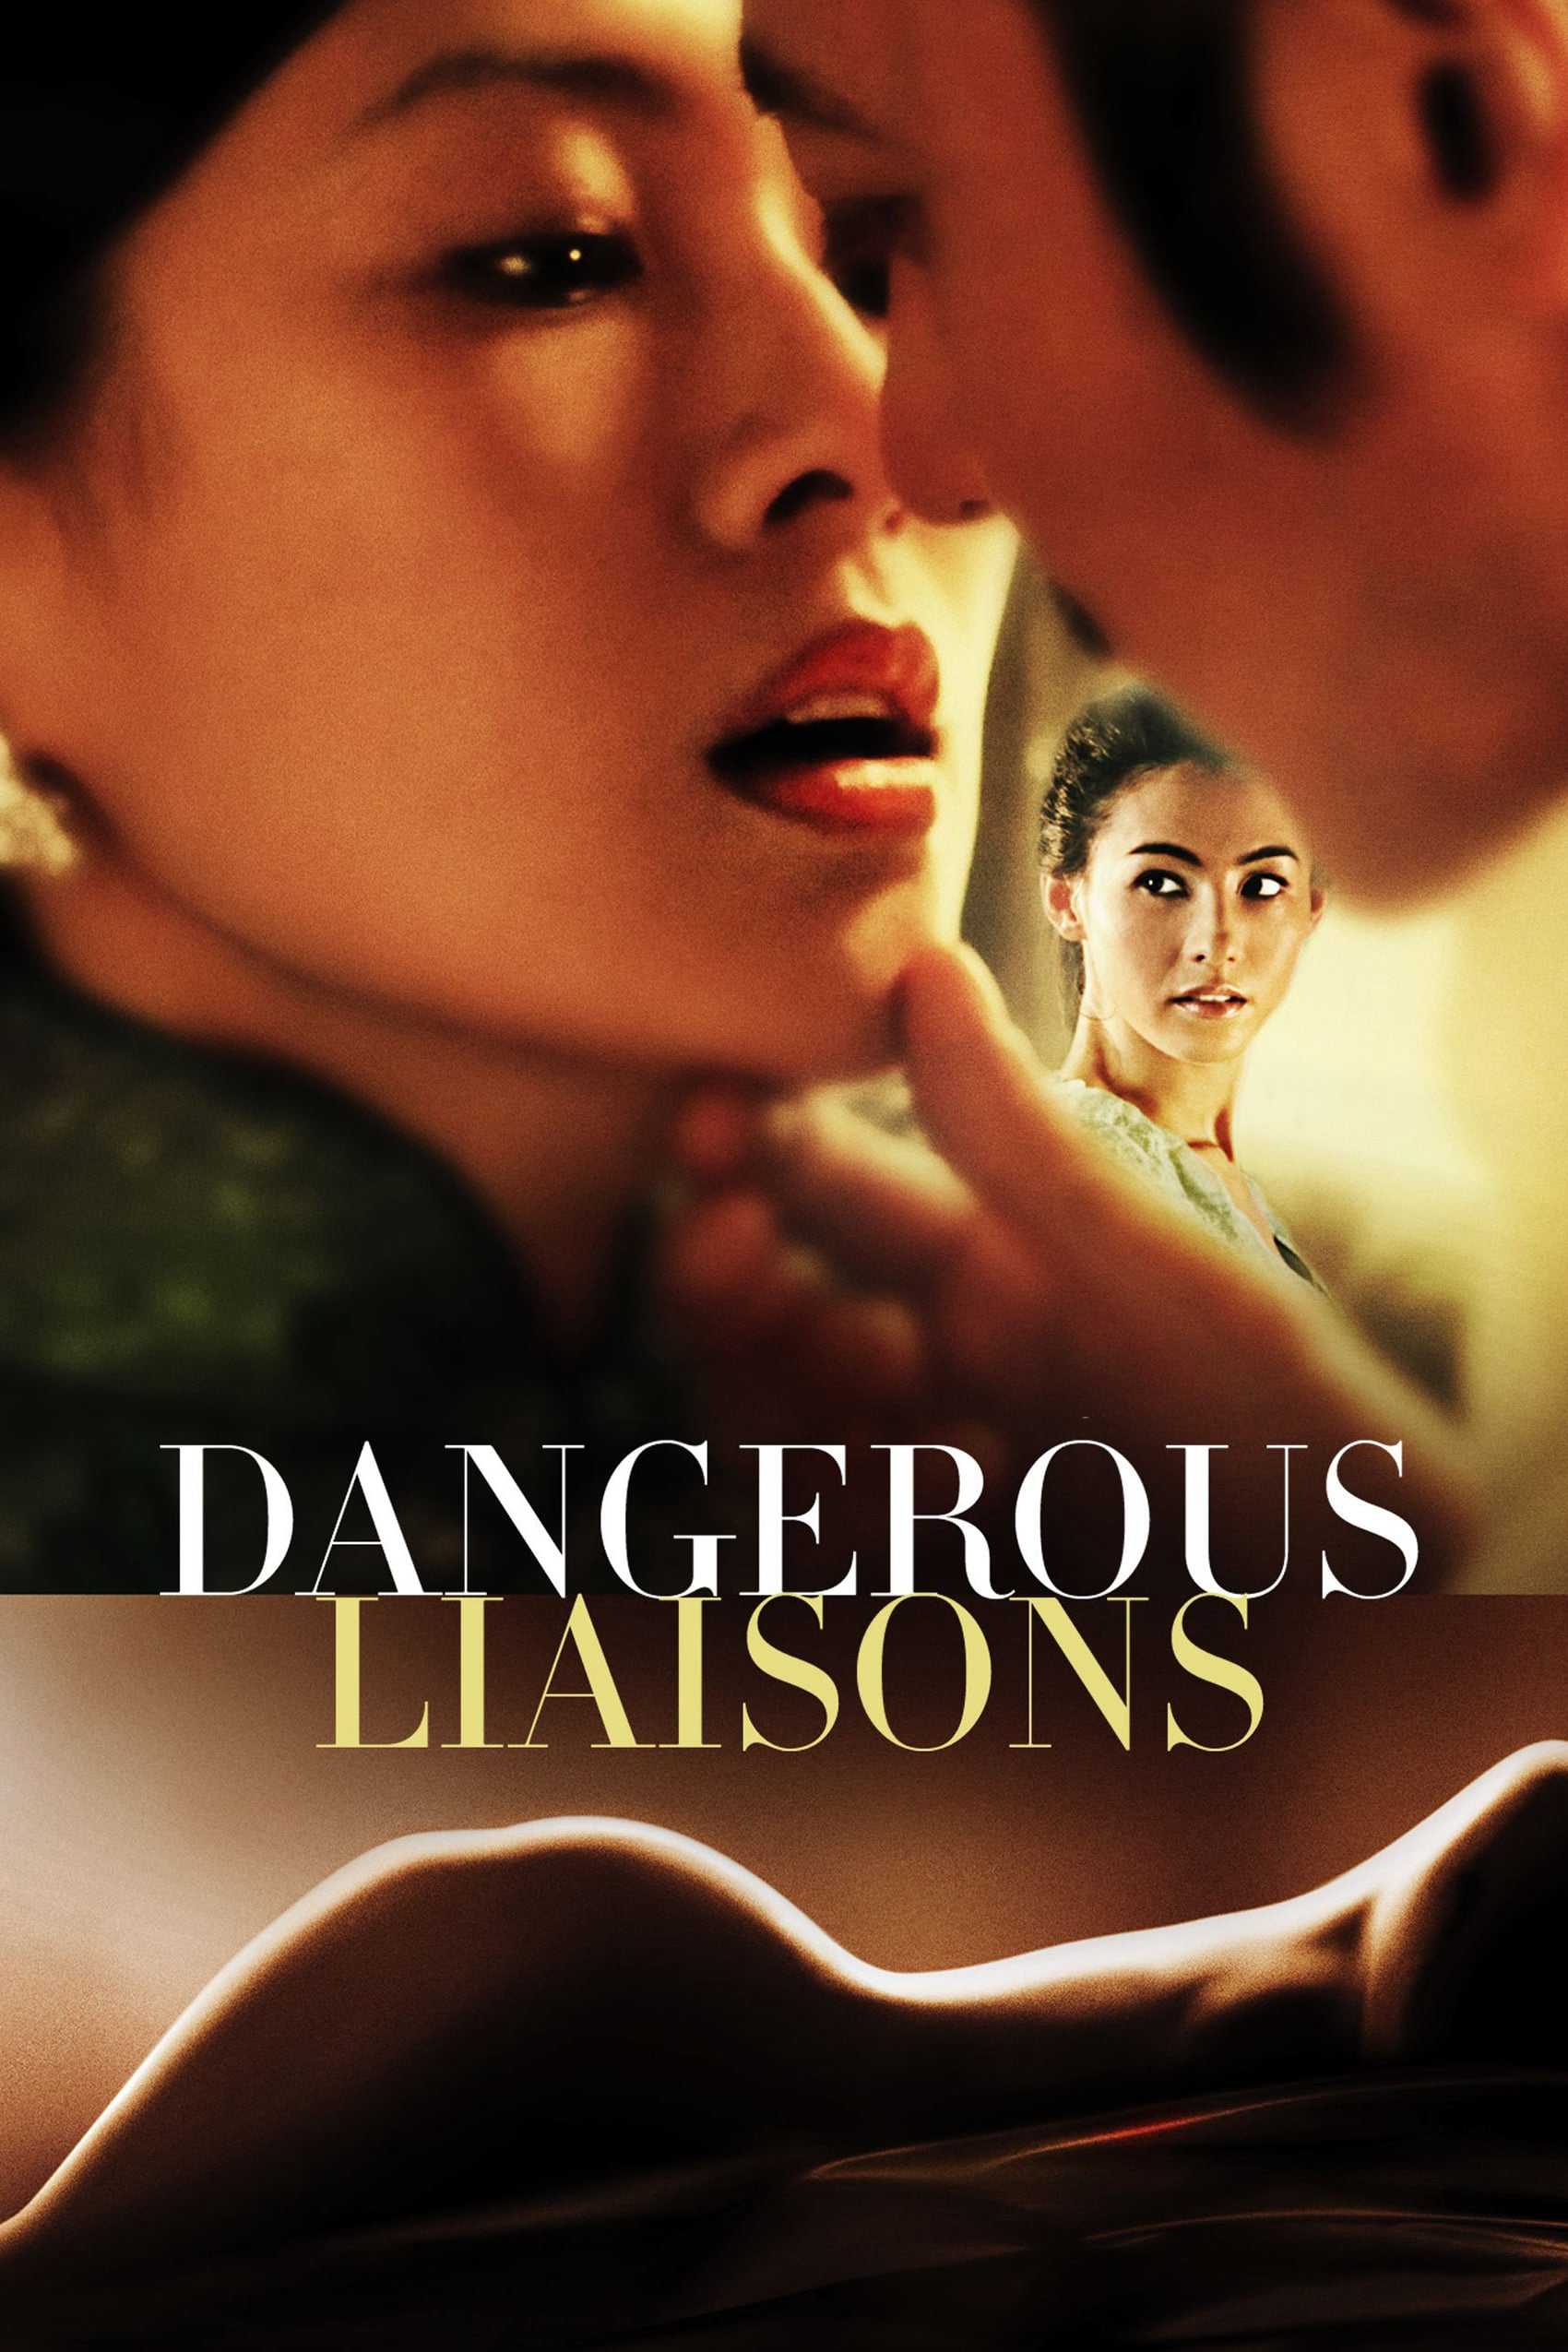 Dangerous liaisons - Quan hệ nguy hiểm